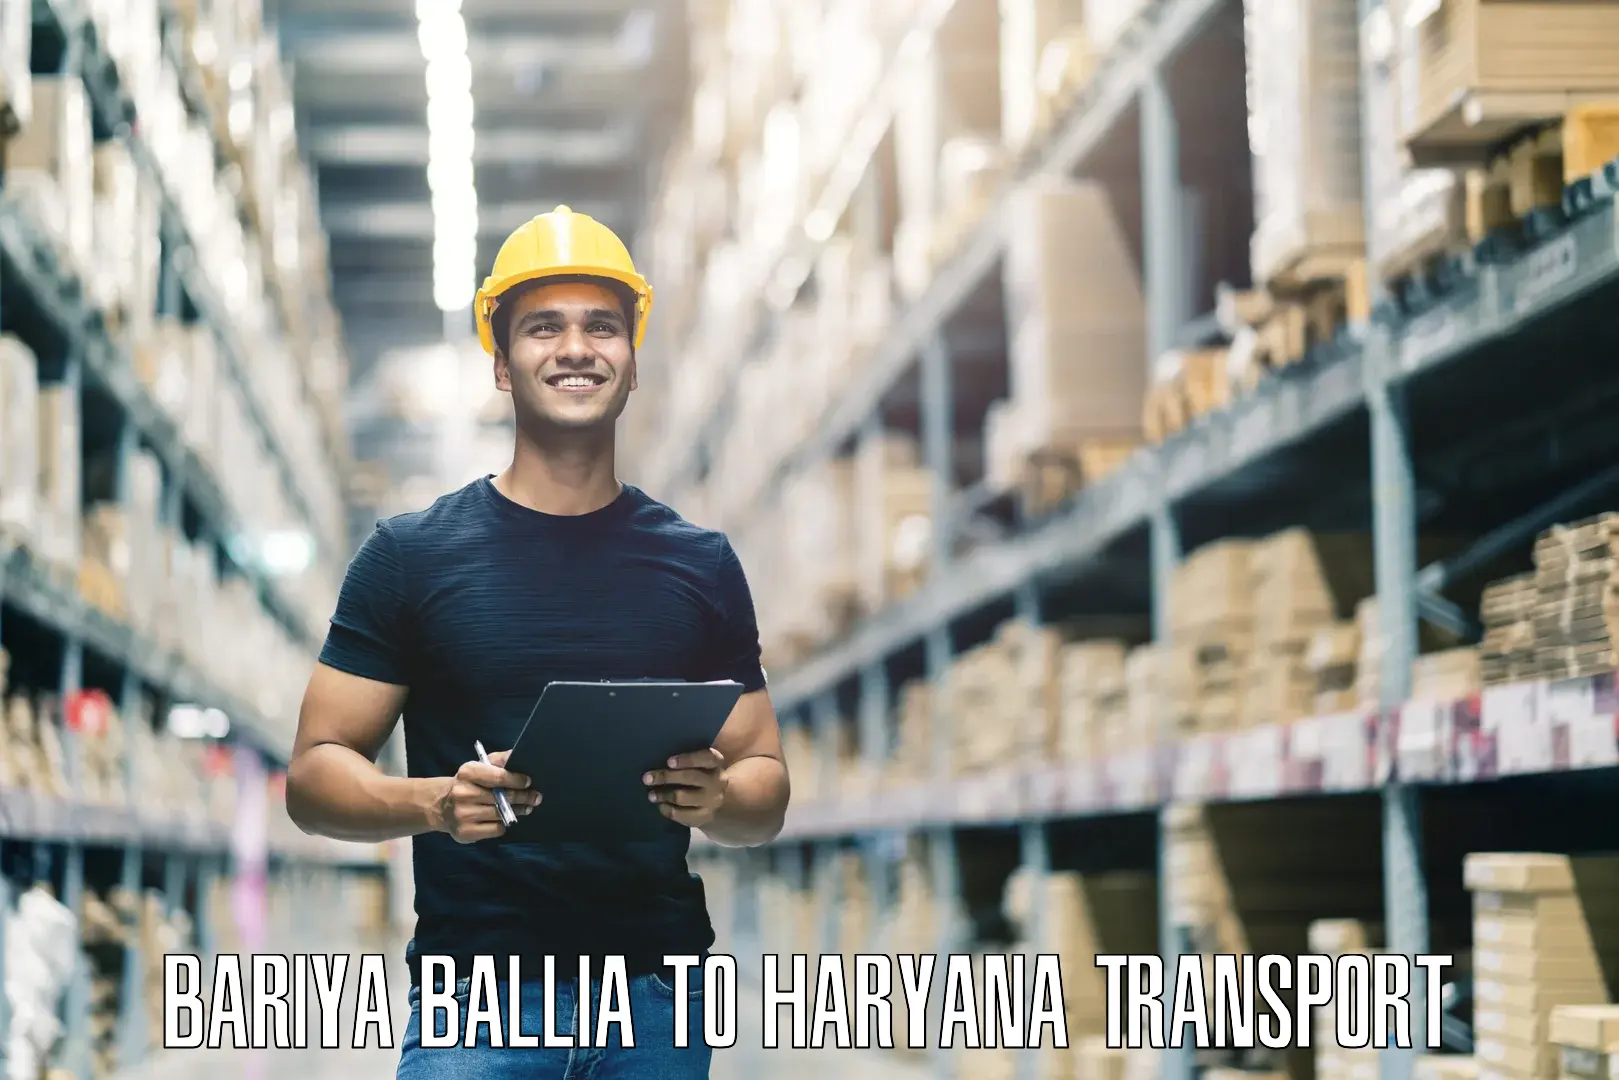 Domestic transport services Bariya Ballia to Chaudhary Charan Singh Haryana Agricultural University Hisar